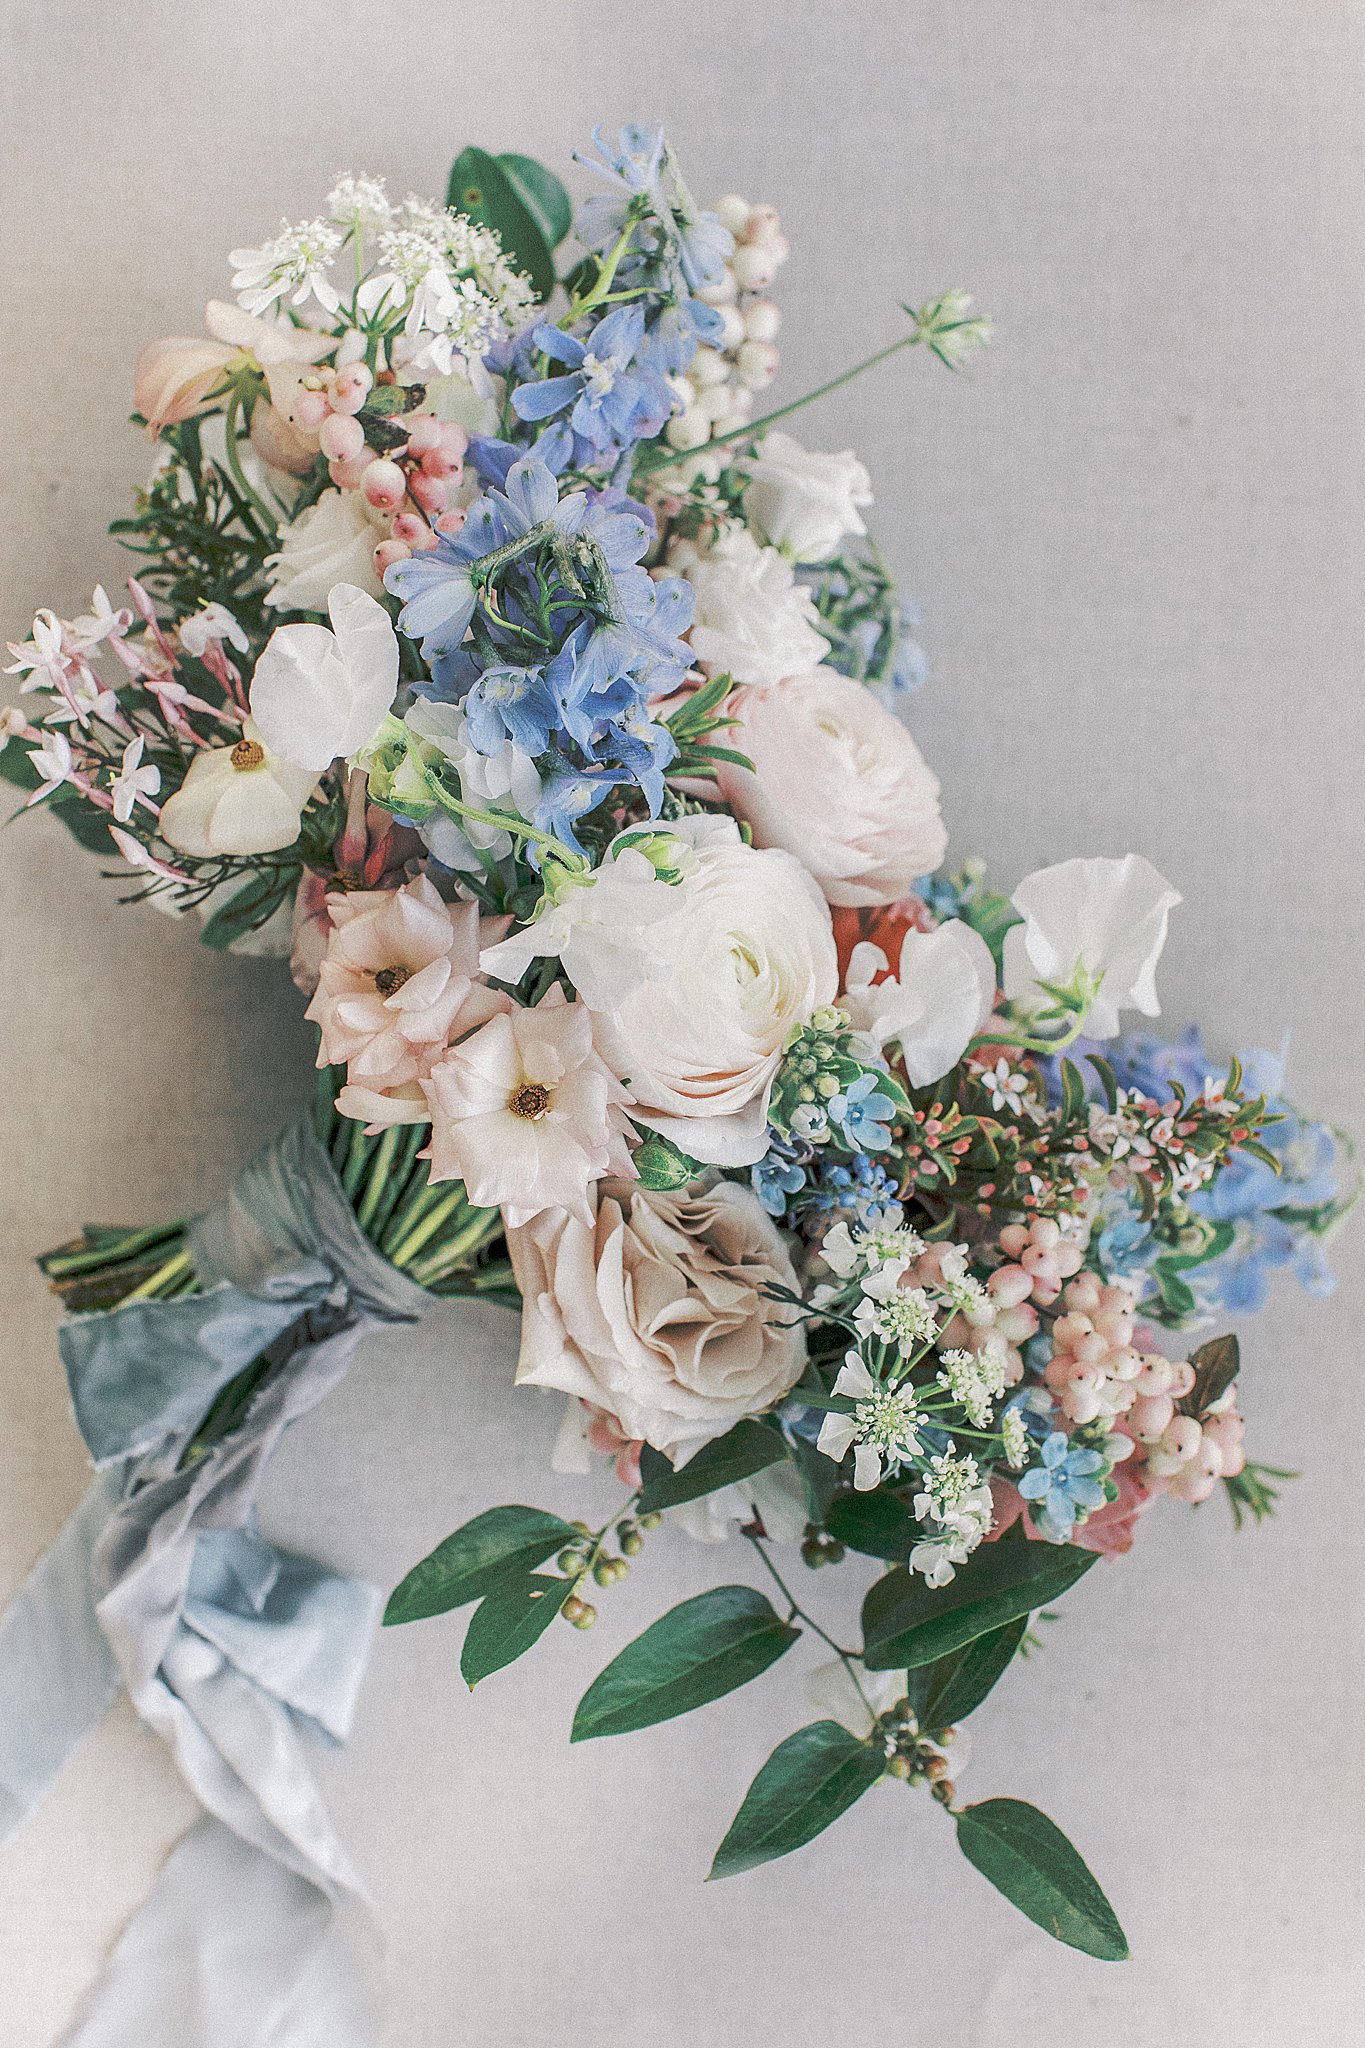 Light blue, blush pink, and white floral arrangement, bridal bouquet